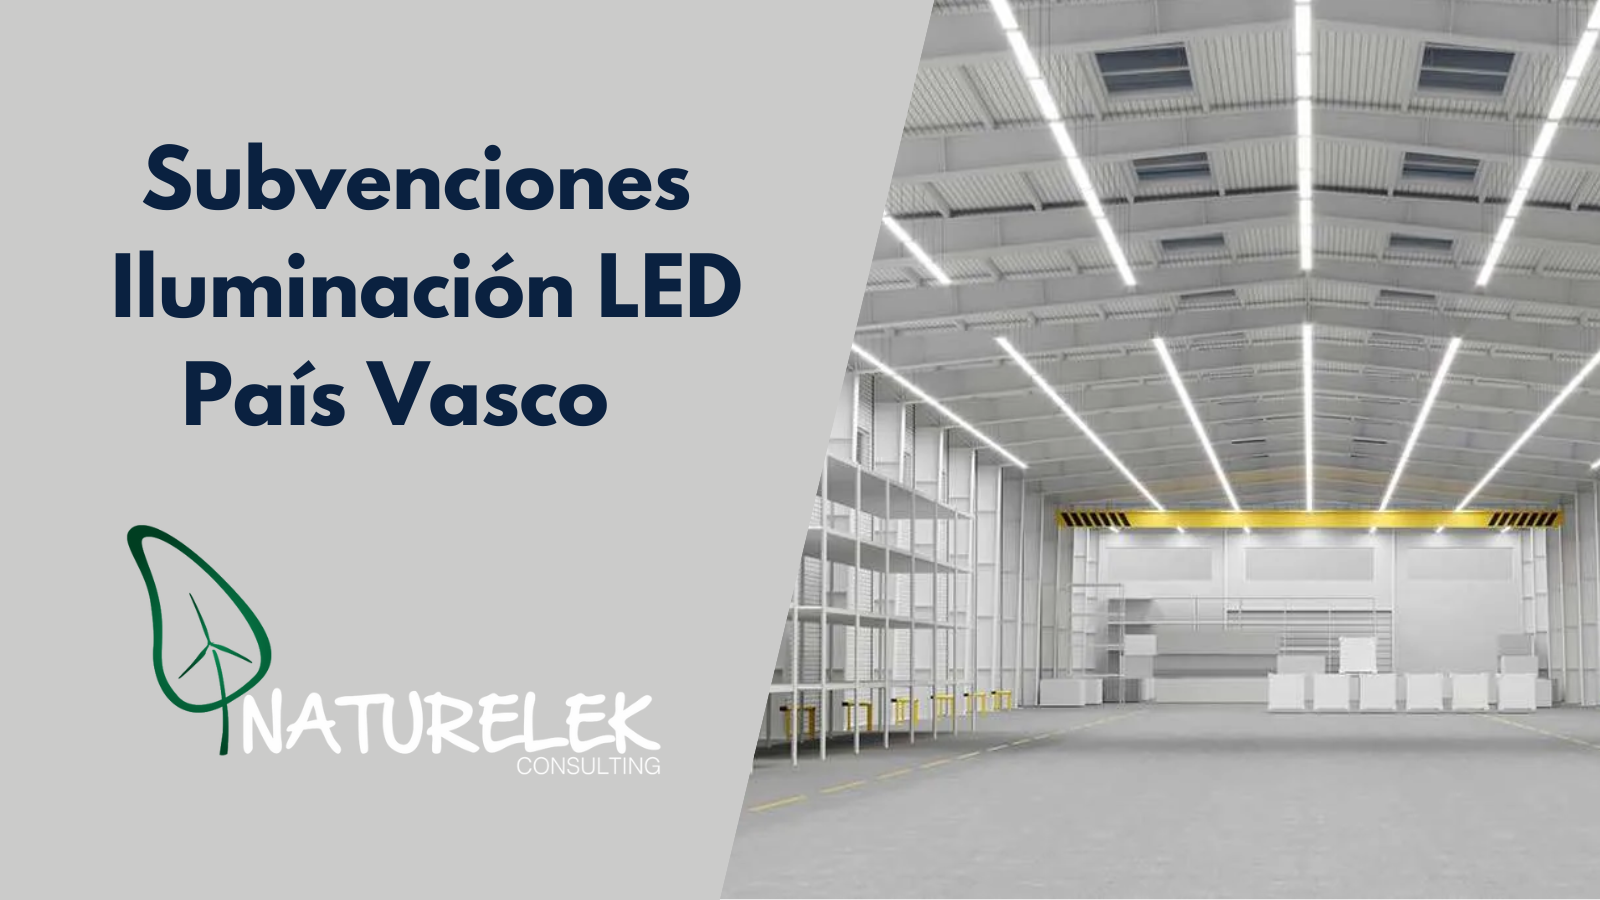 Subvenciones Iluminación LED pais vasco